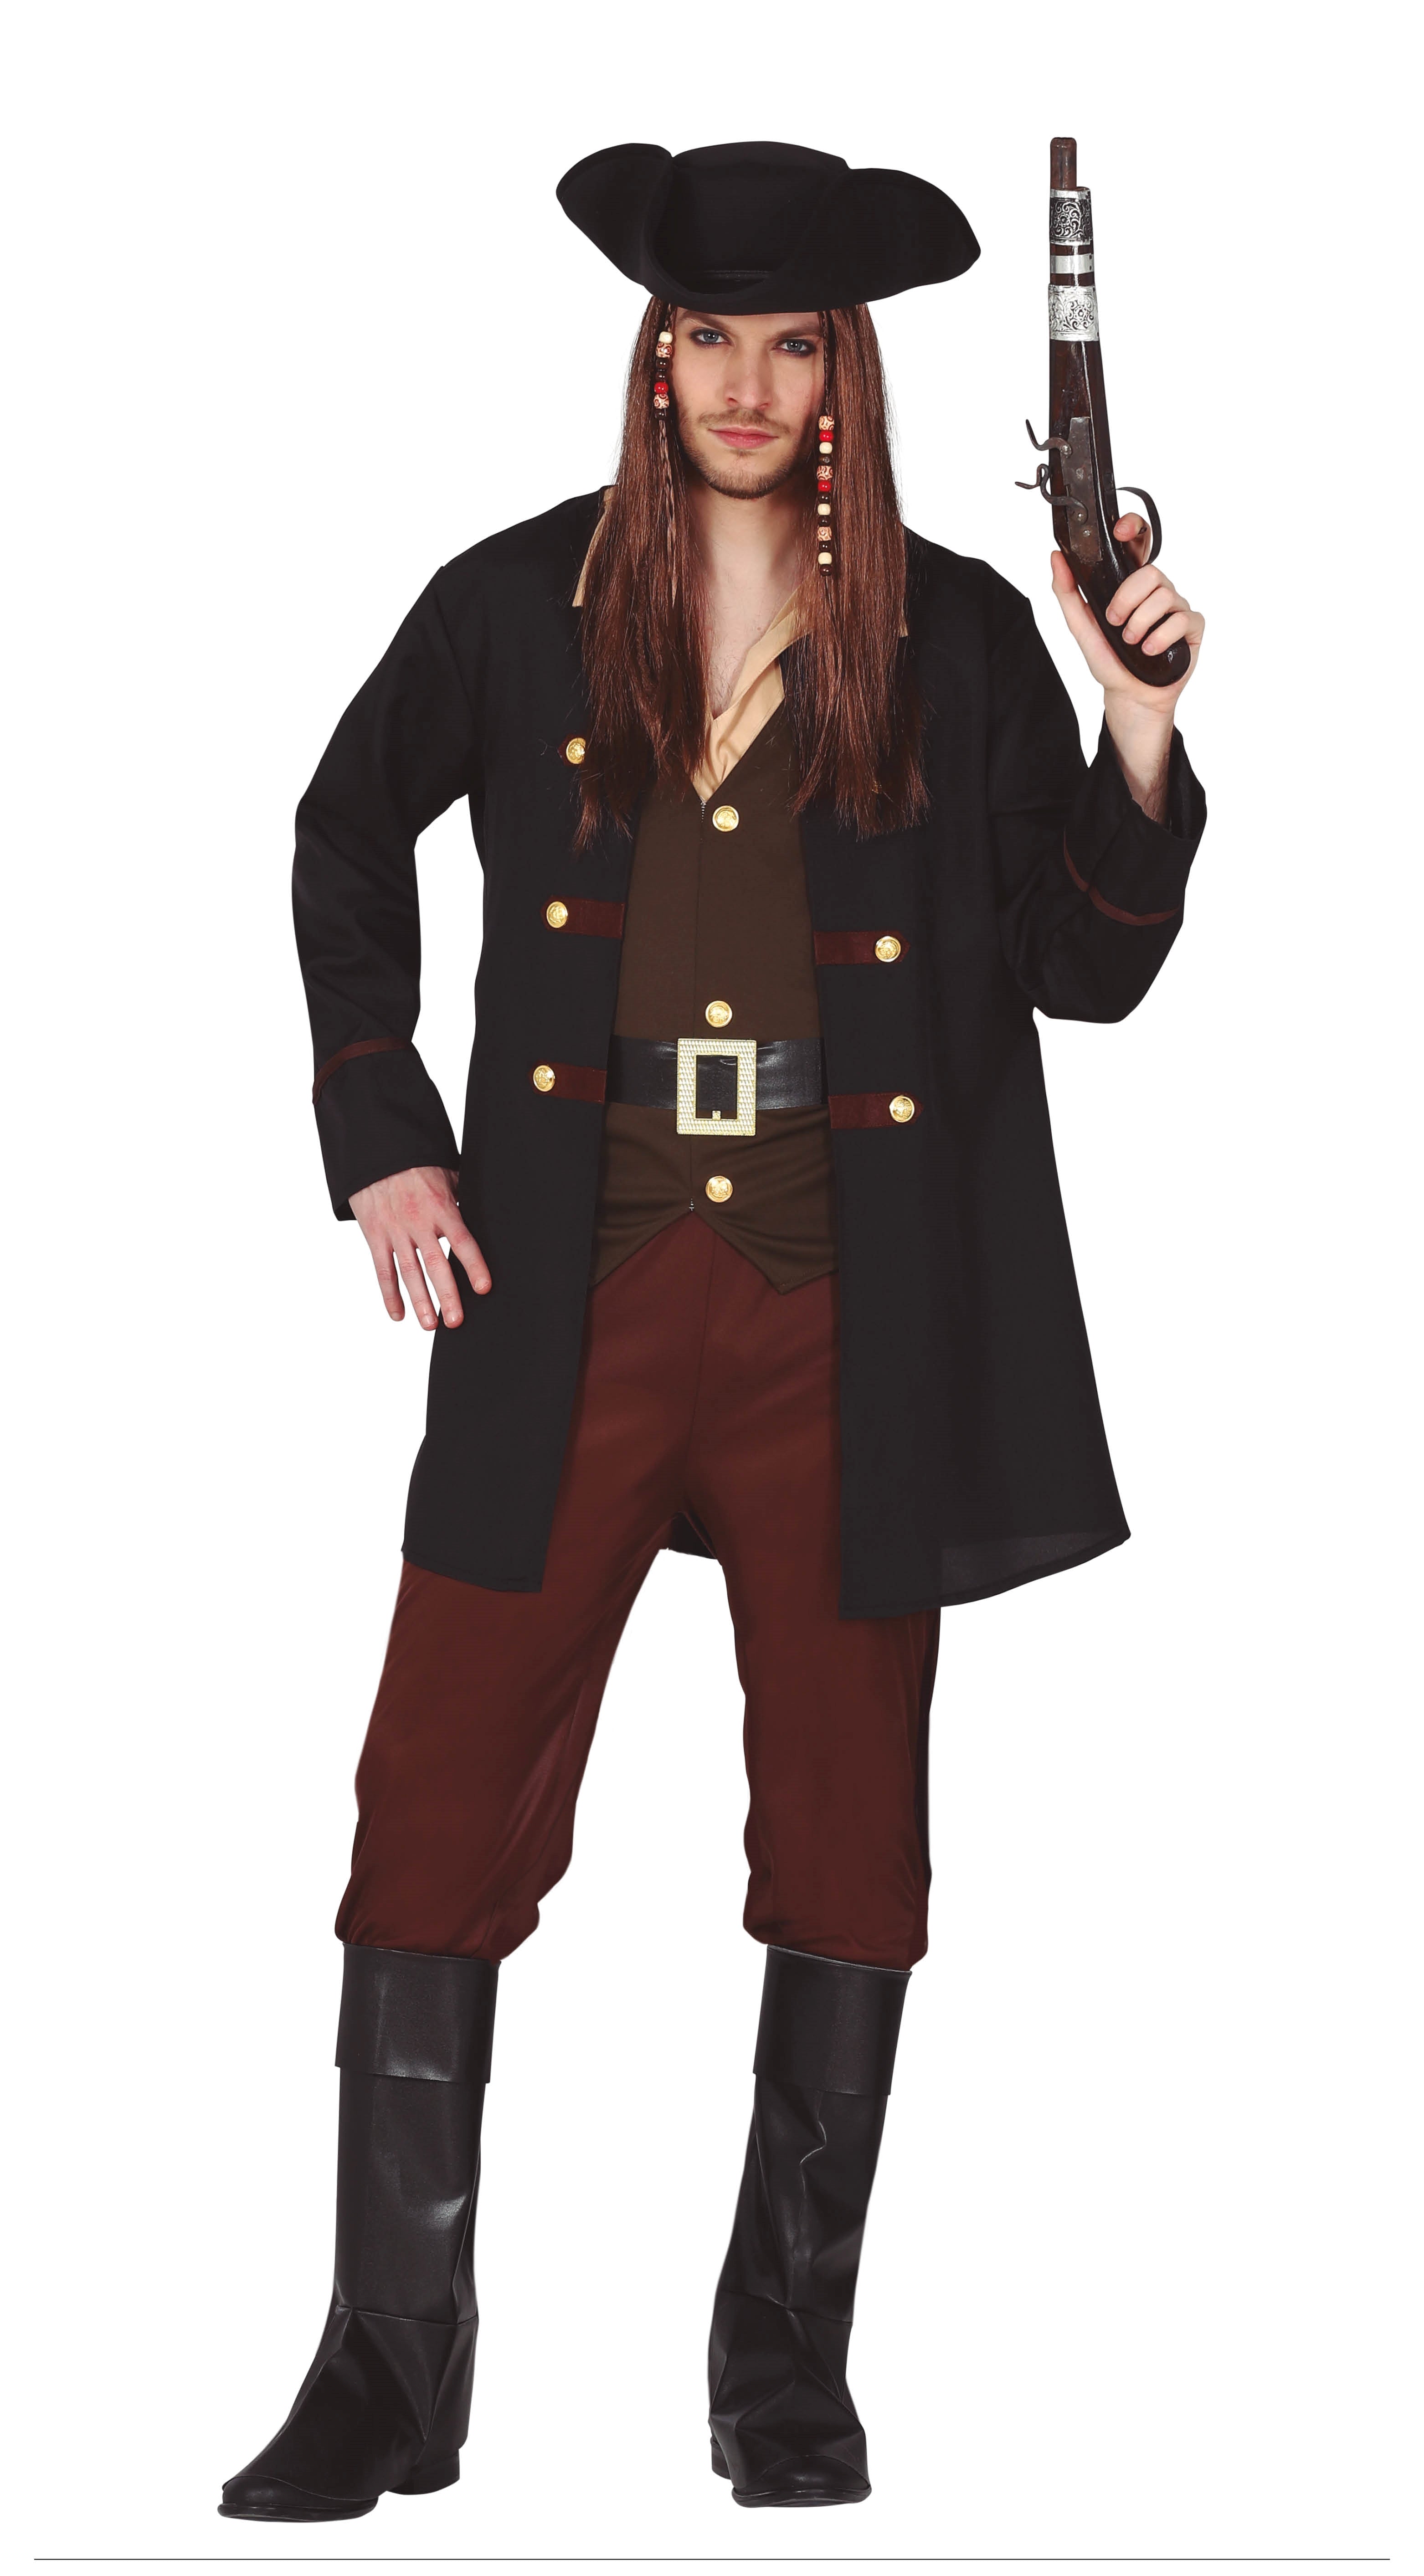 Pirate Captain Costume Men's